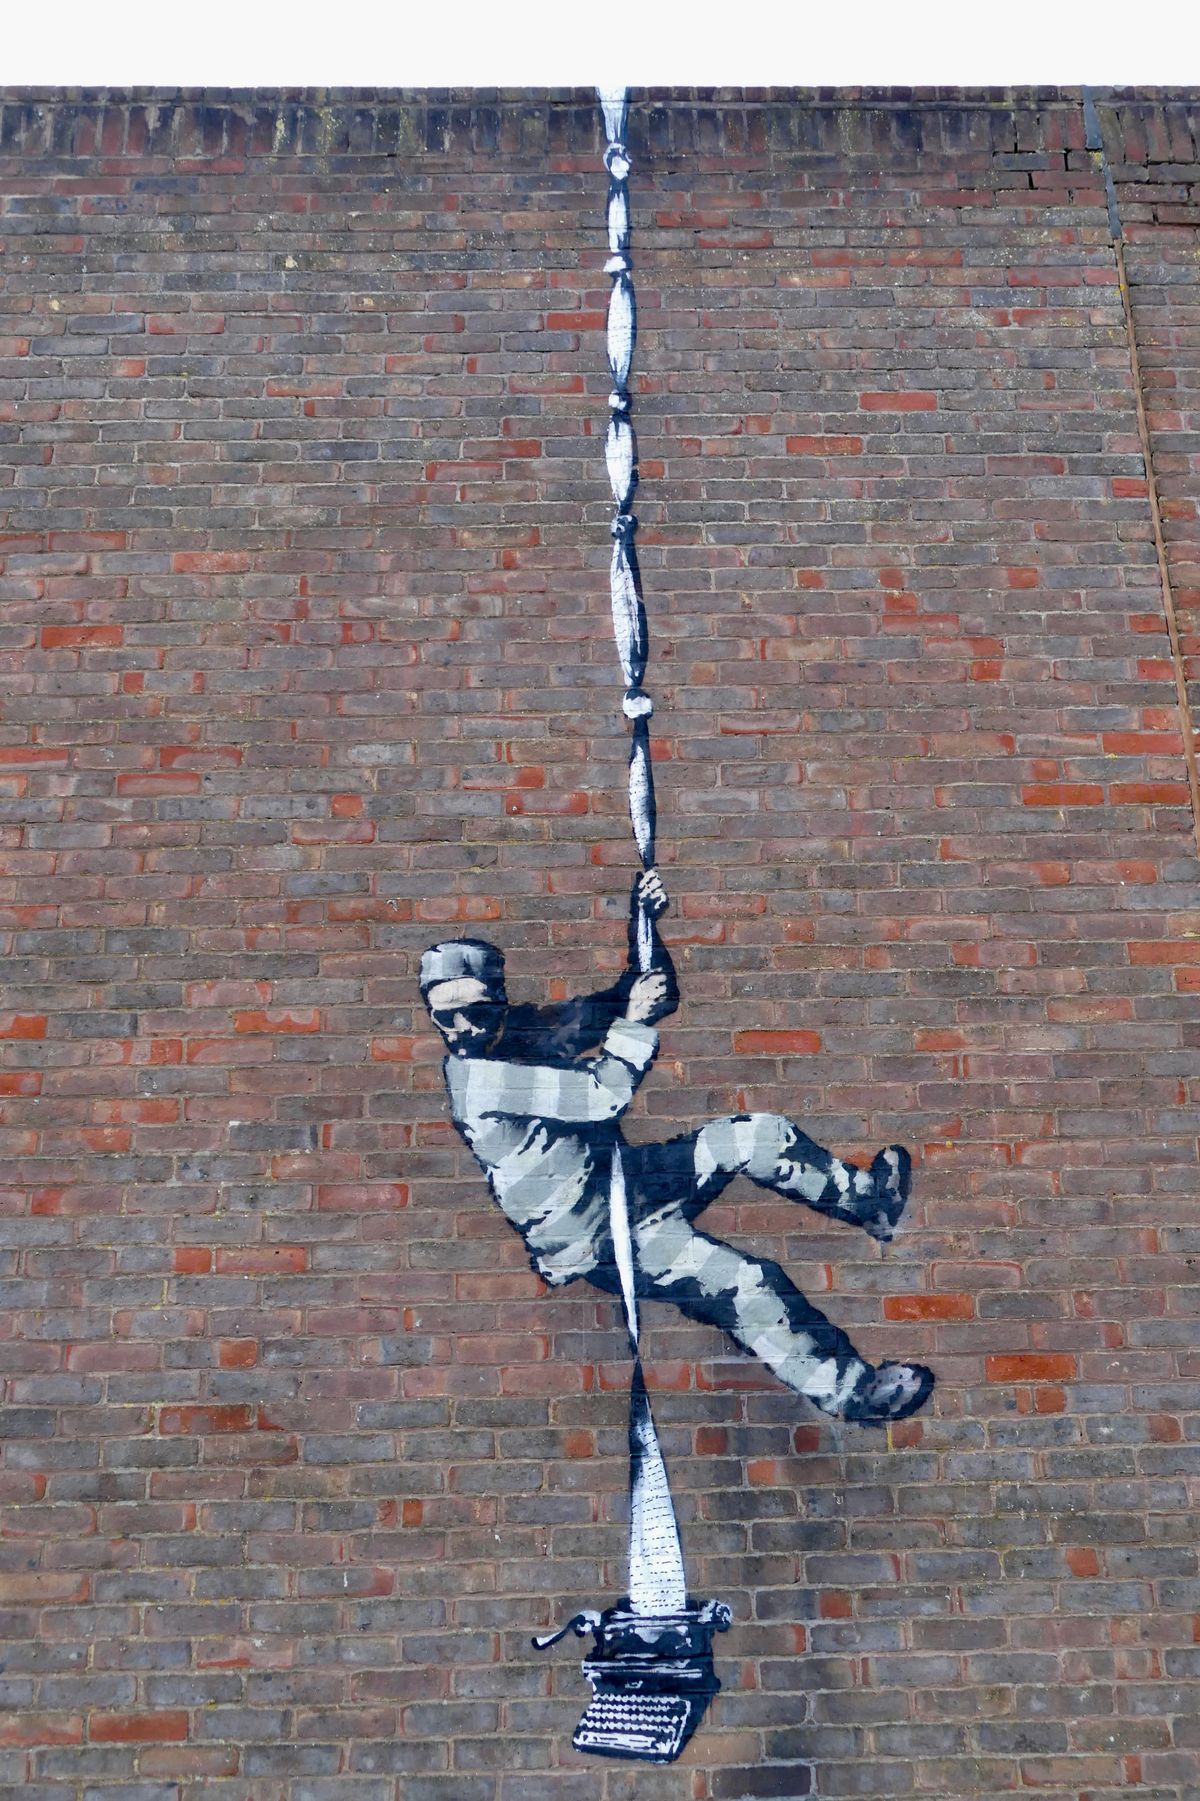 Μια νέα τοιχογραφία του Banksy μπορεί να έχει μόλις εμφανιστεί σε έναν τοίχο φυλακής